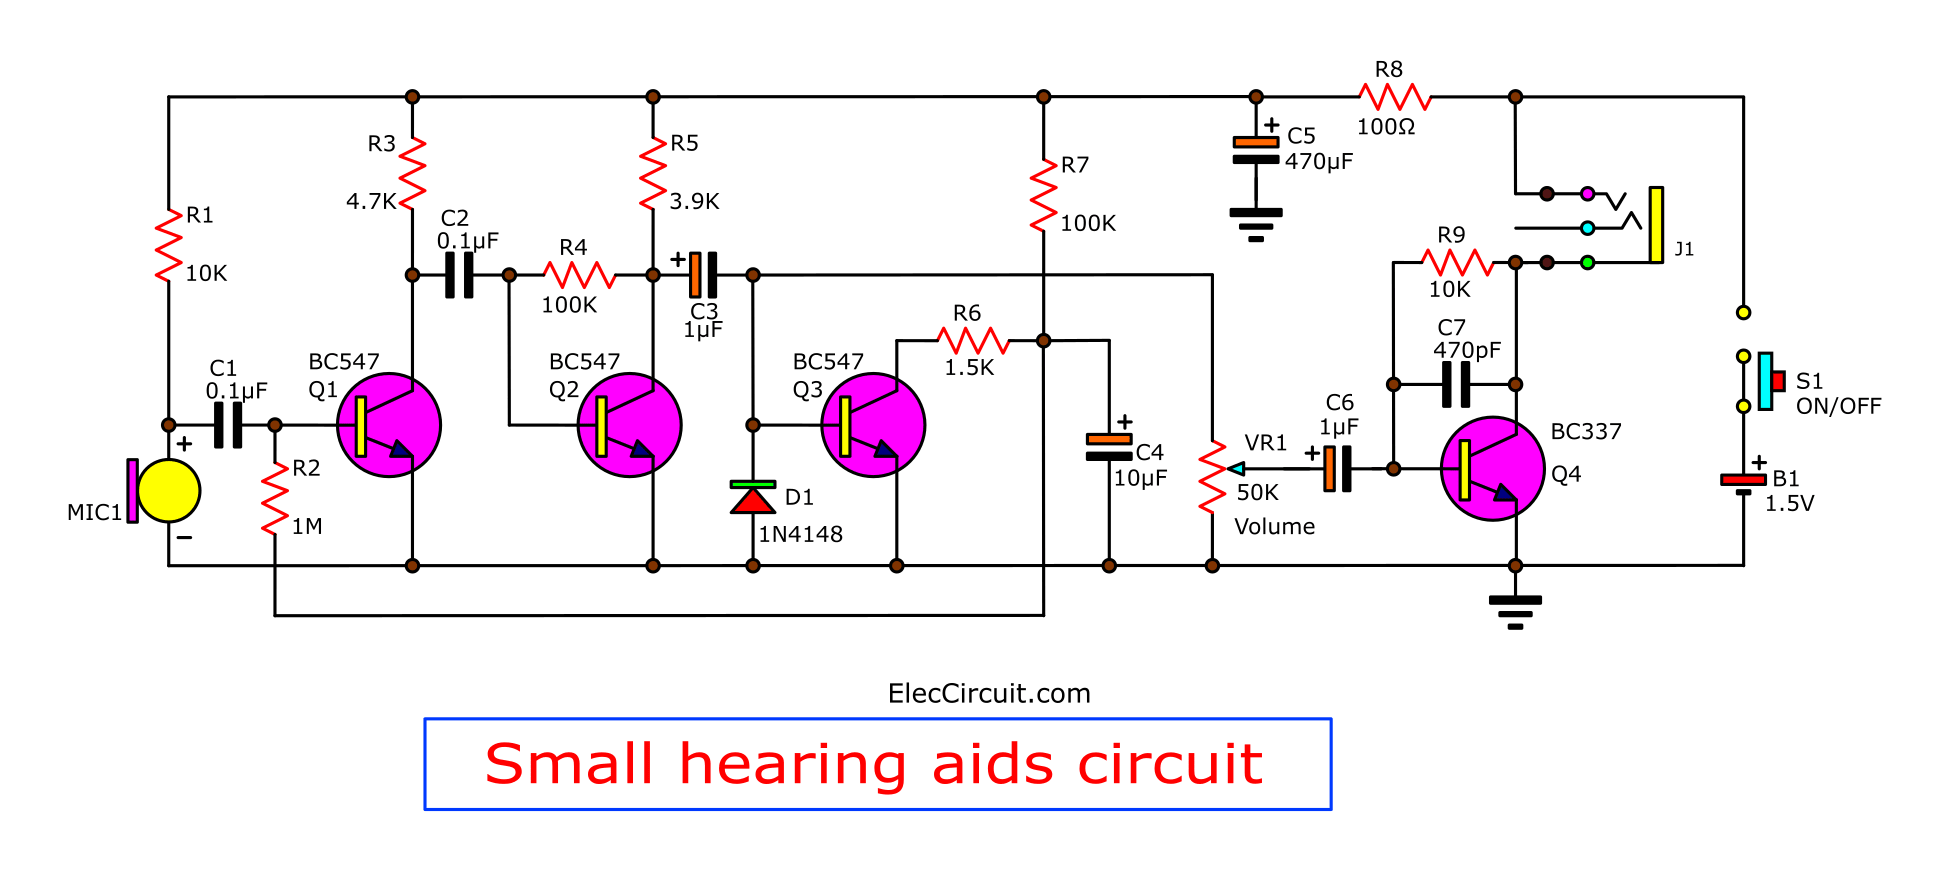 Hearing Aid Circuit Diagram - The Cheap Small H   earing Aids Project - Hearing Aid Circuit Diagram